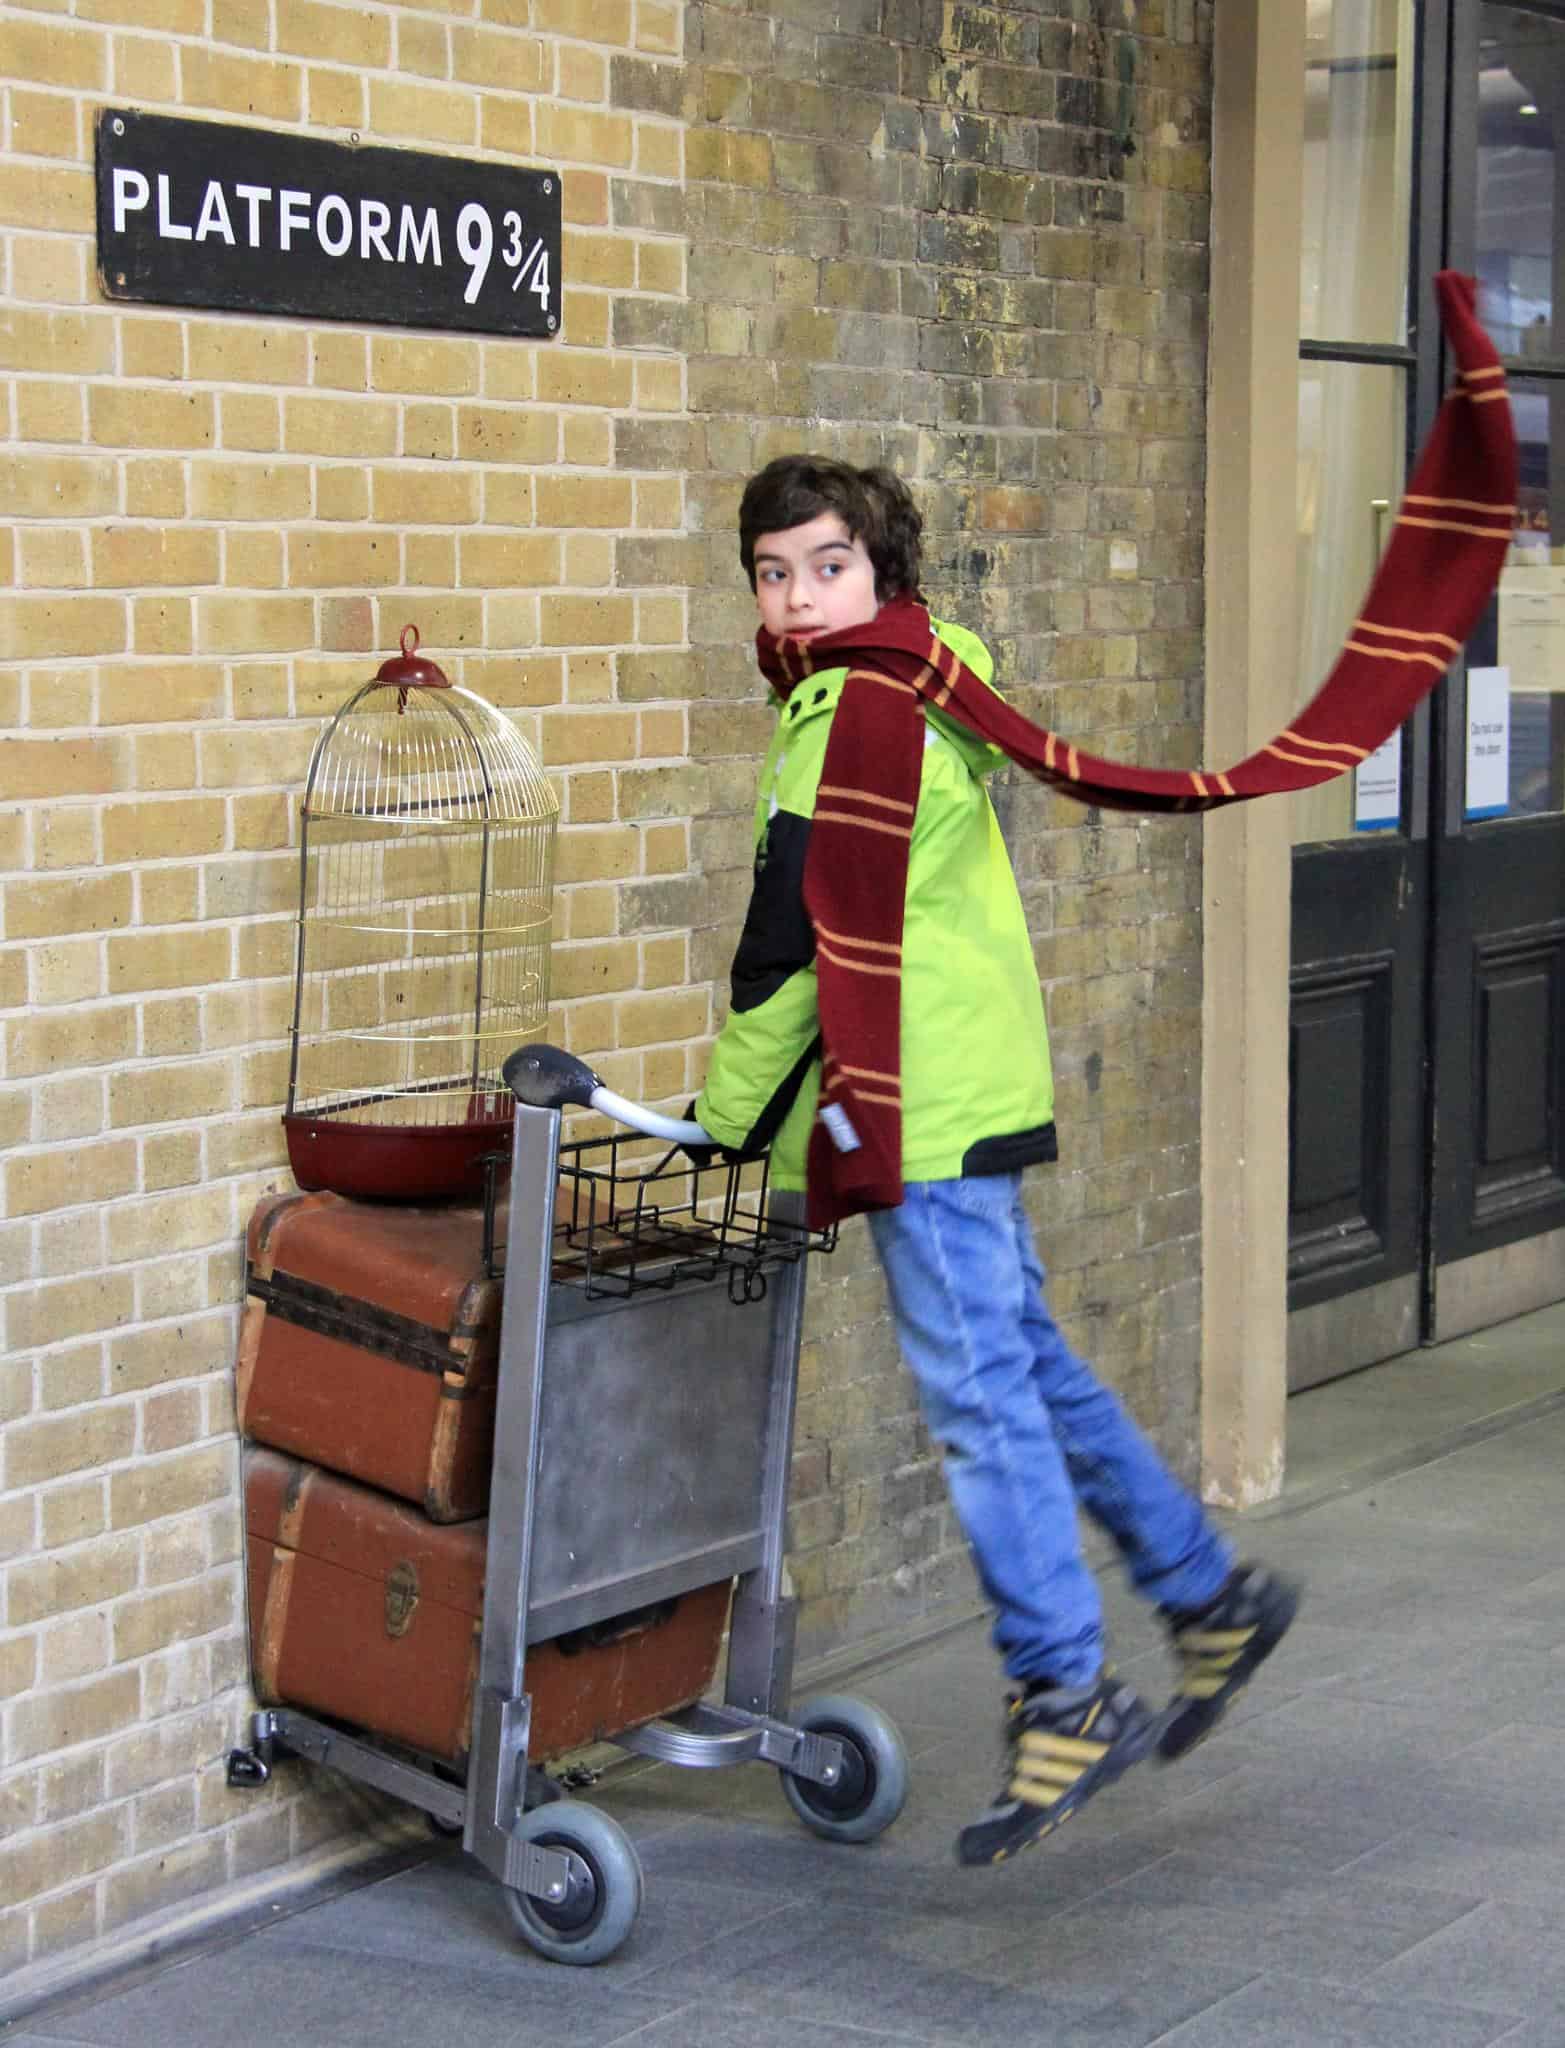 Harry Potter 9 3/4 King's Crossing Platform Sign